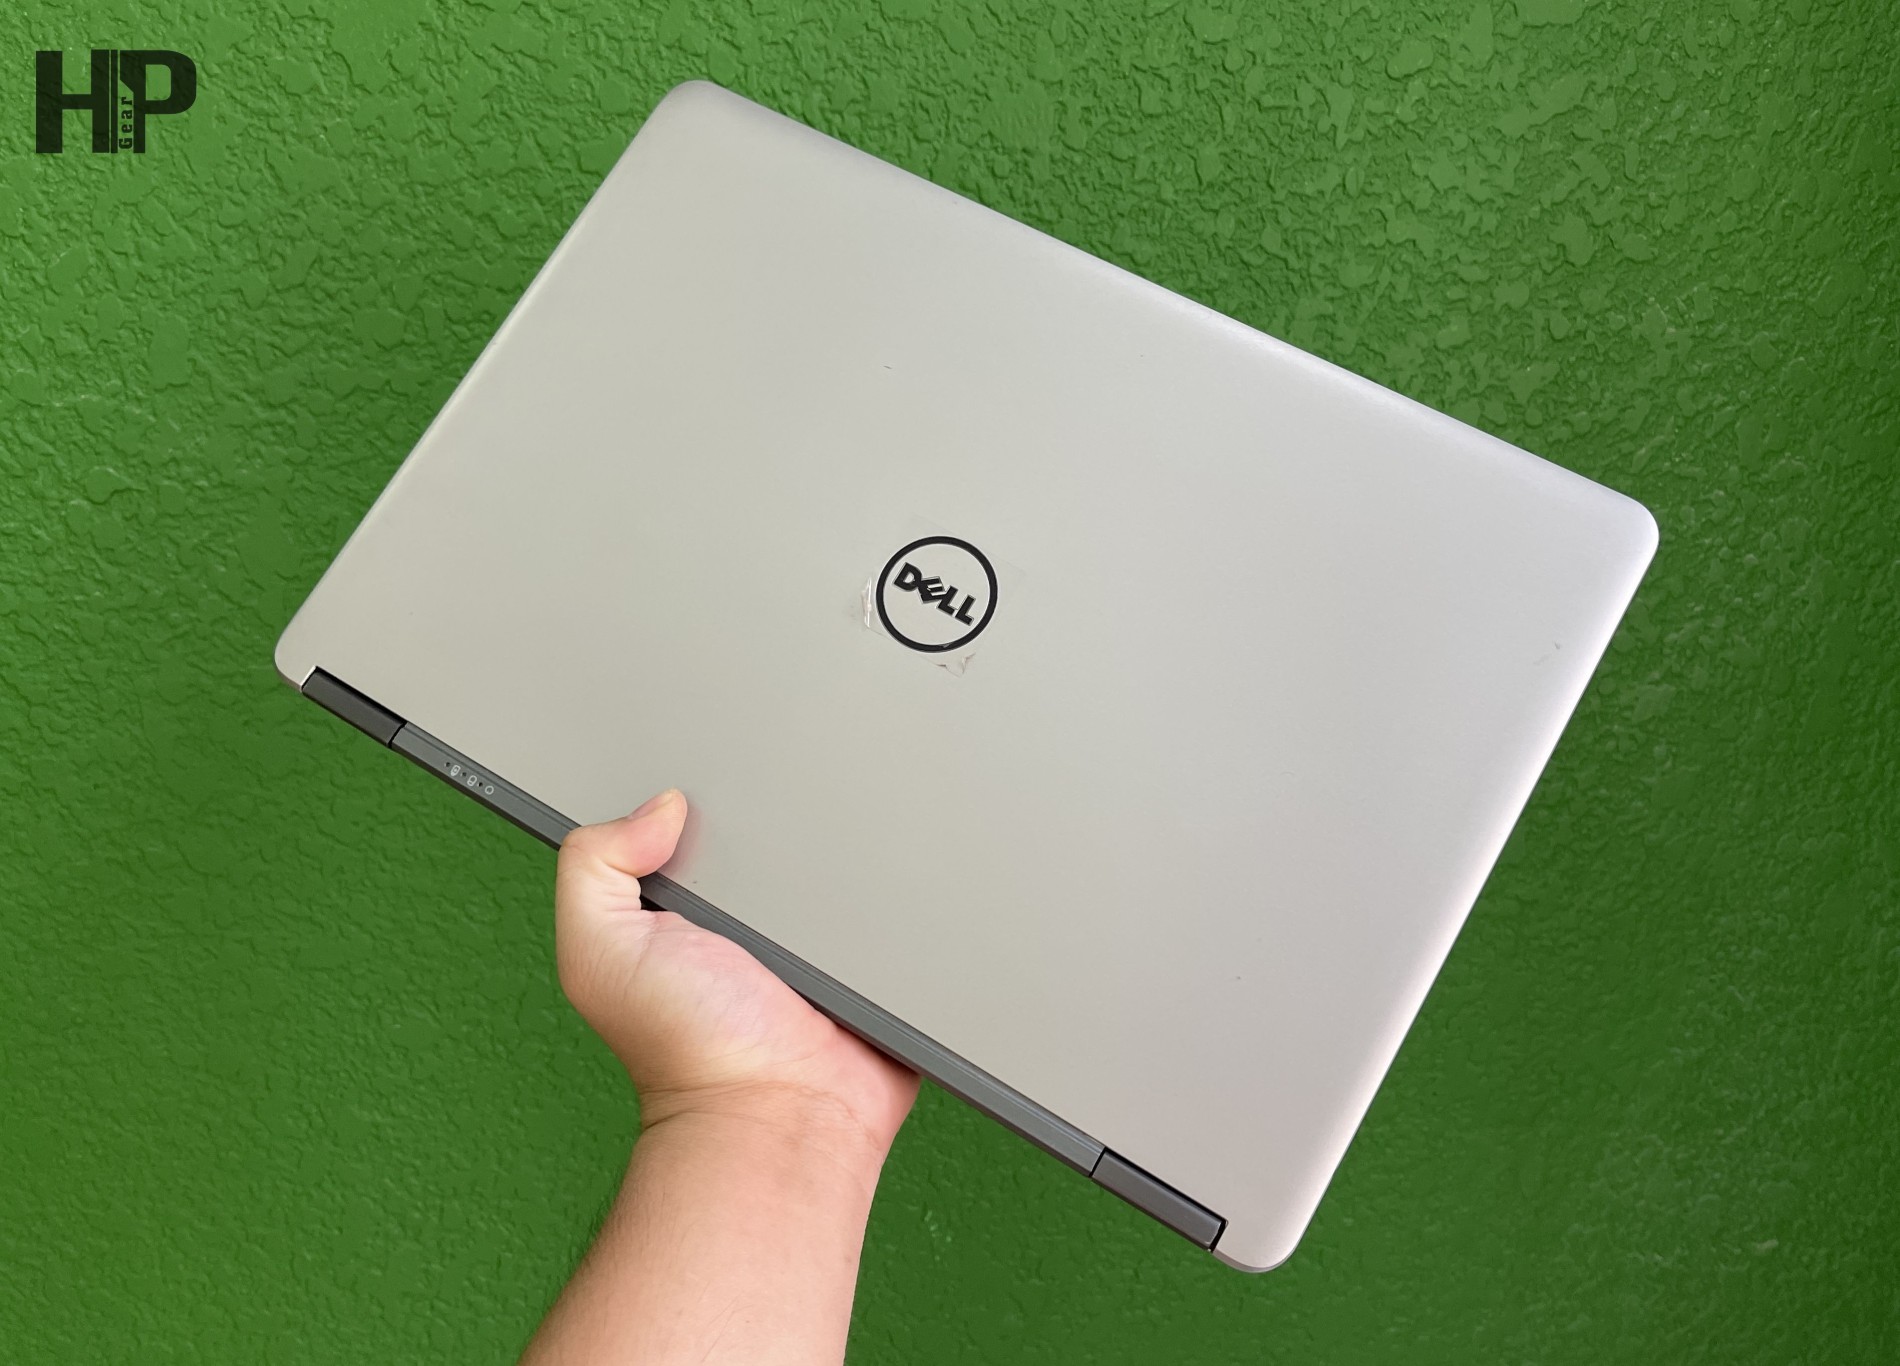 Laptop Dell Latitude E7440 Intel Core i5 – RAM 4GB, SSD 128GB, 14″ HD